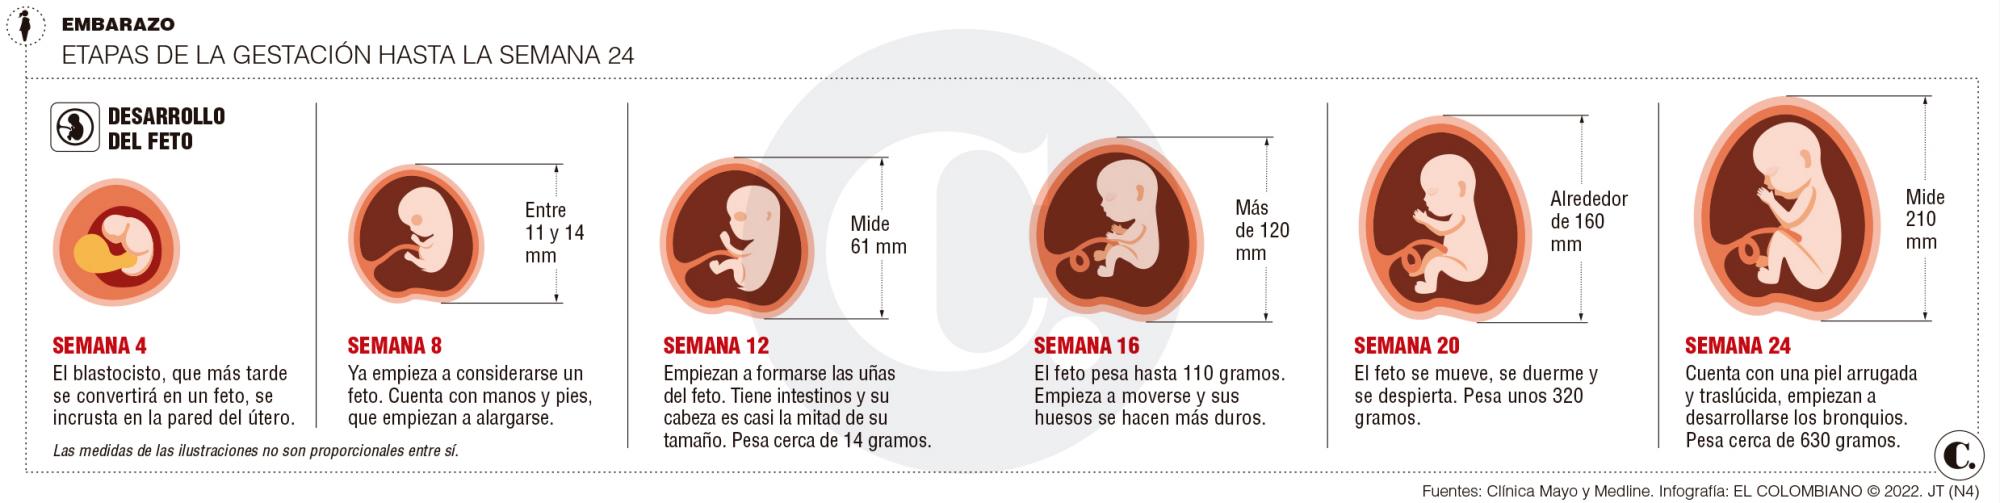 Histórico: desde hoy es legal abortar hasta los seis meses en Colombia